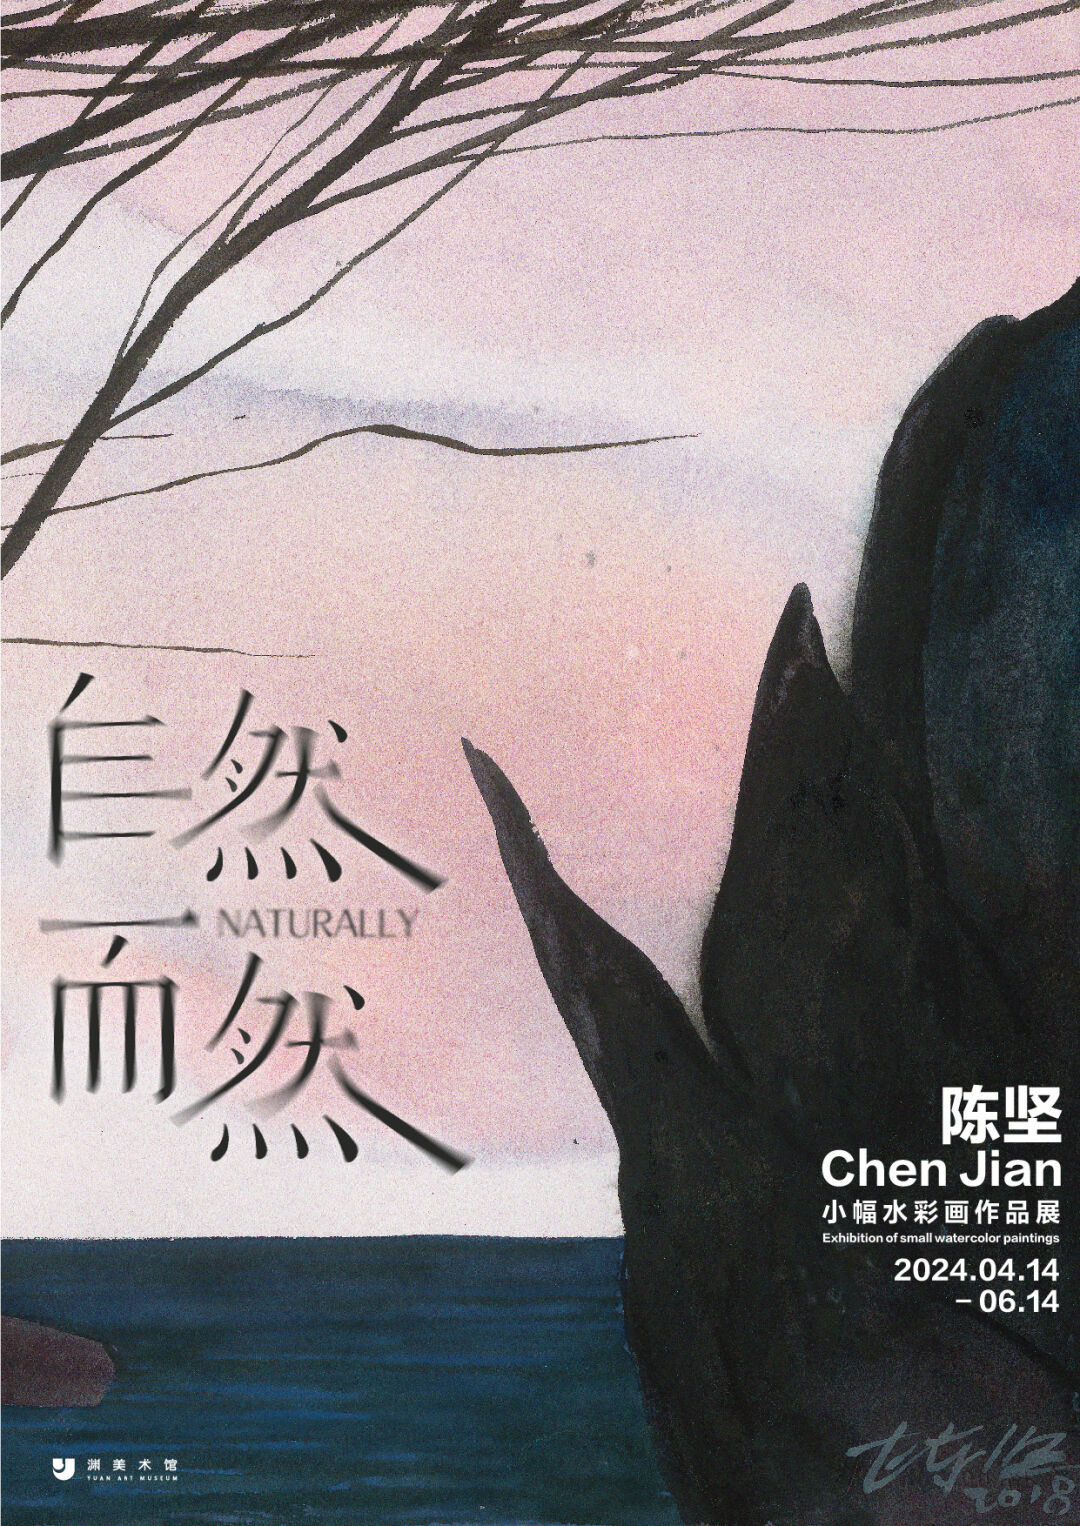 一位旅者的情绪日记，“自然而然——陈坚小幅水彩画作品展”将于明日在杭州渊美术馆开幕